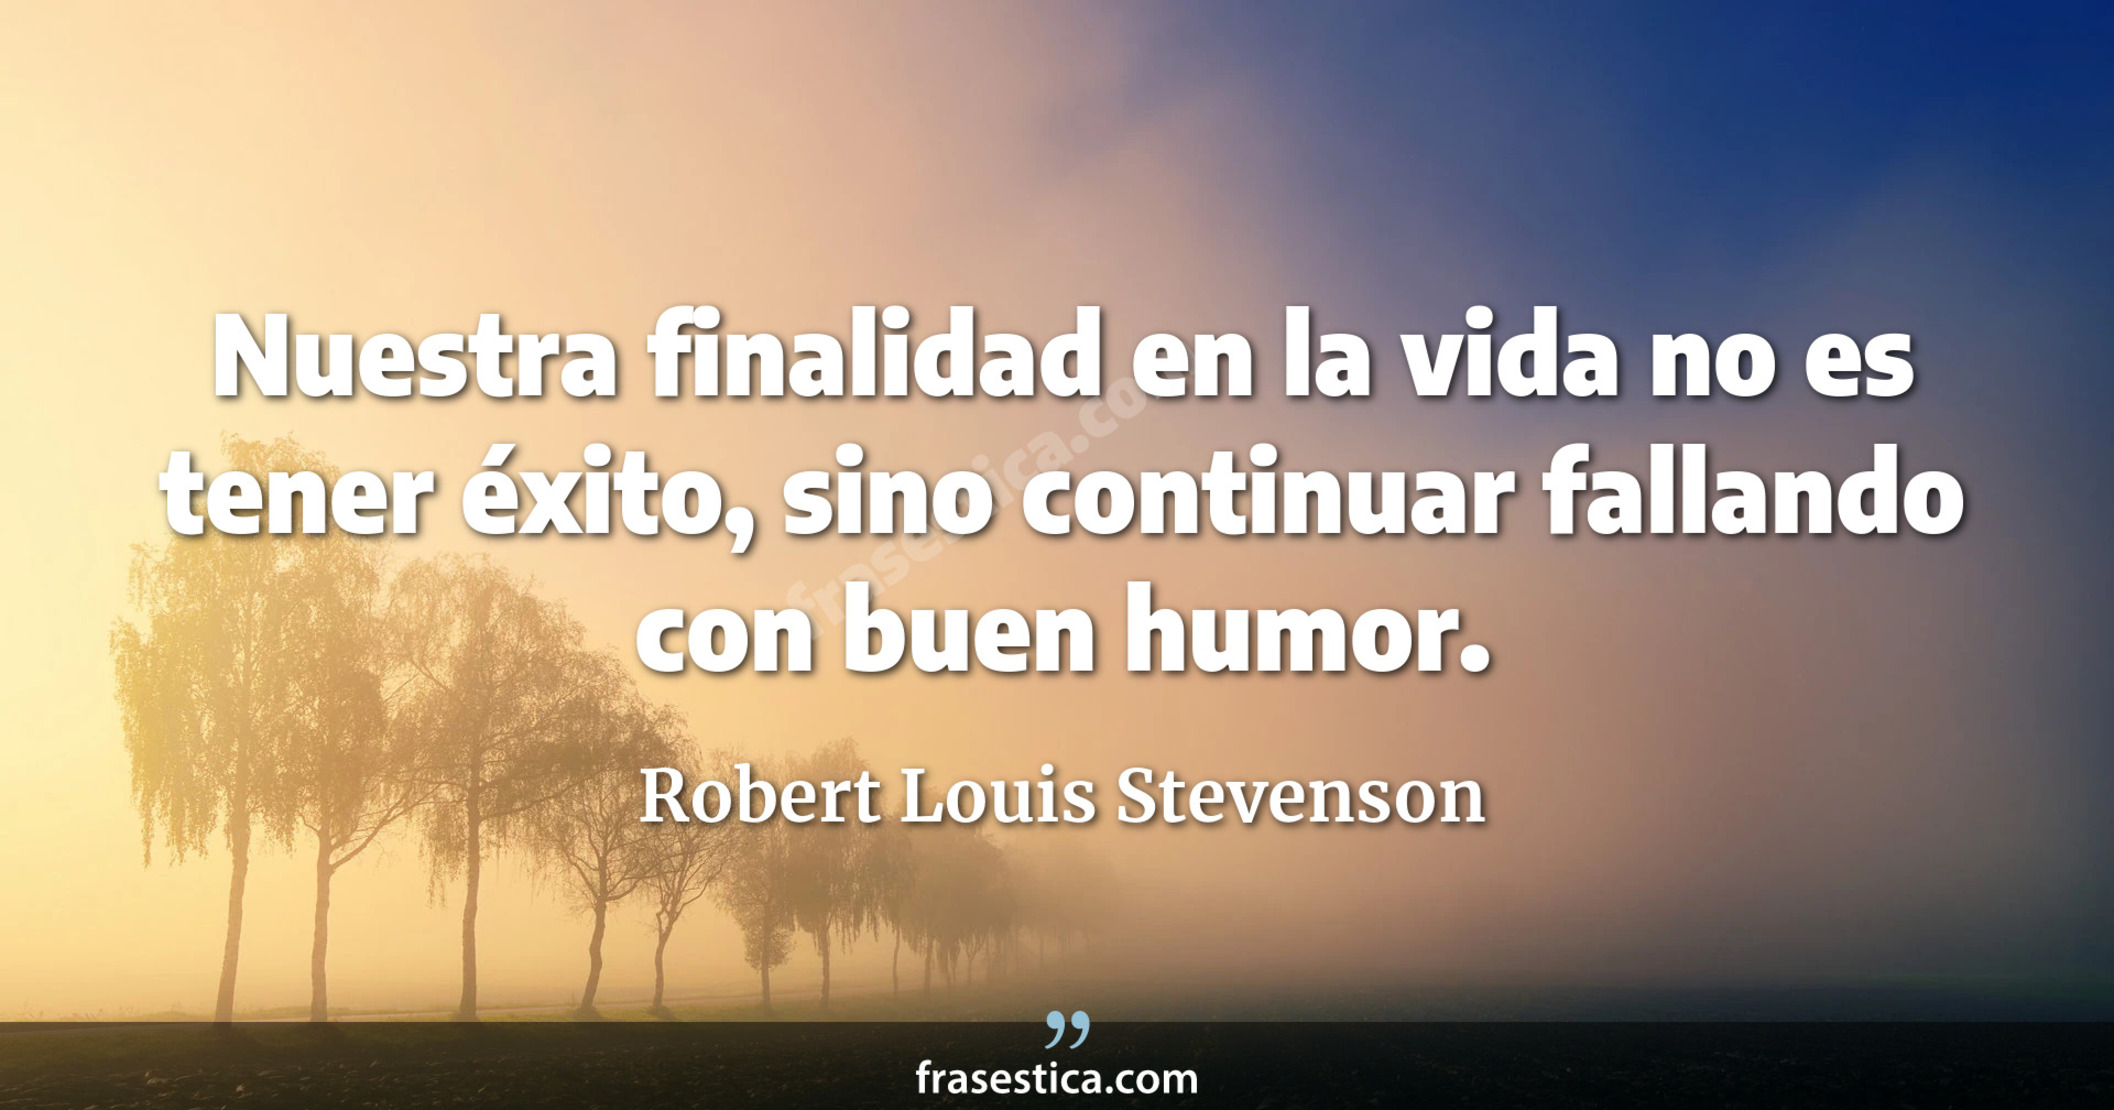 Nuestra finalidad en la vida no es tener éxito, sino continuar fallando con buen humor. - Robert Louis Stevenson